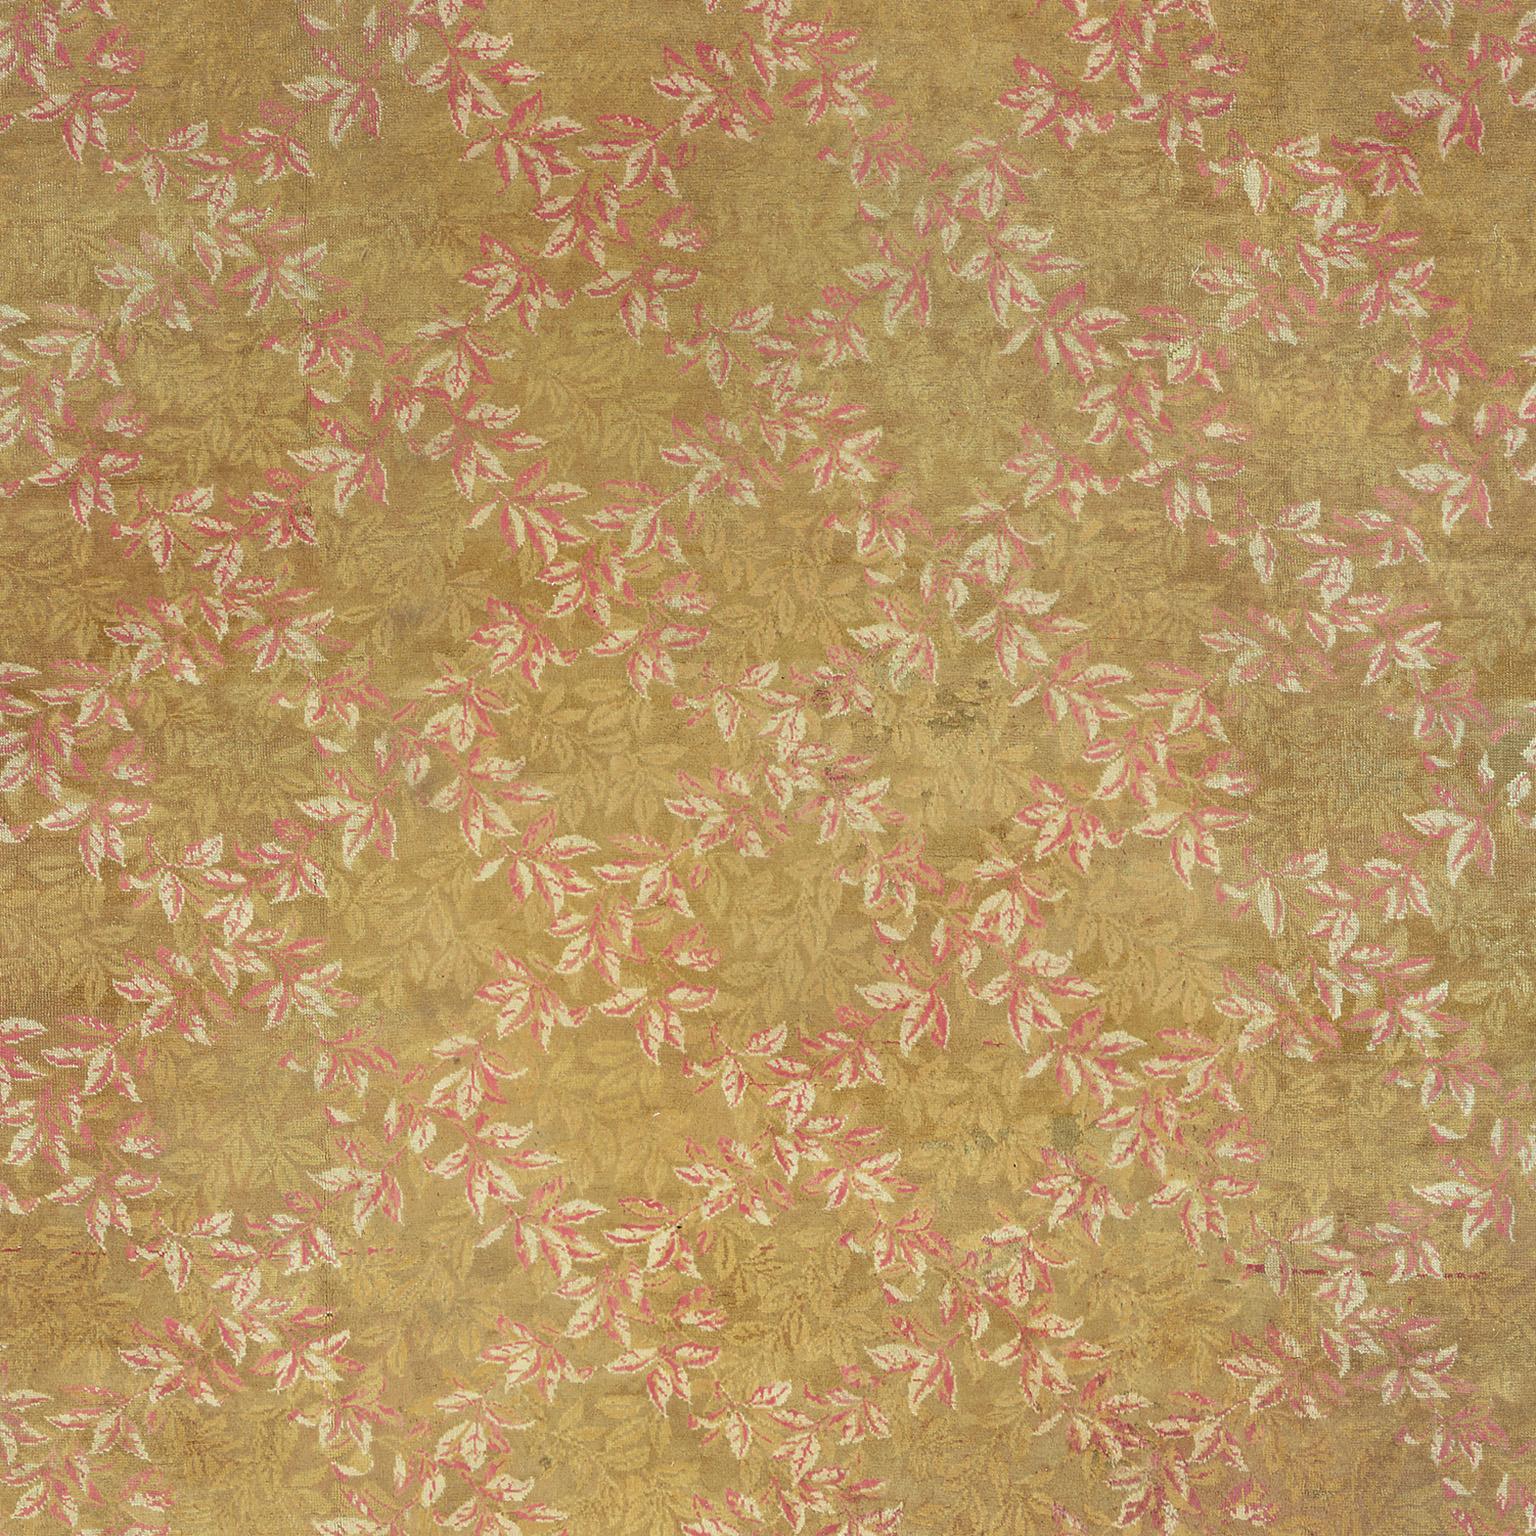 vintage axminster carpet for sale